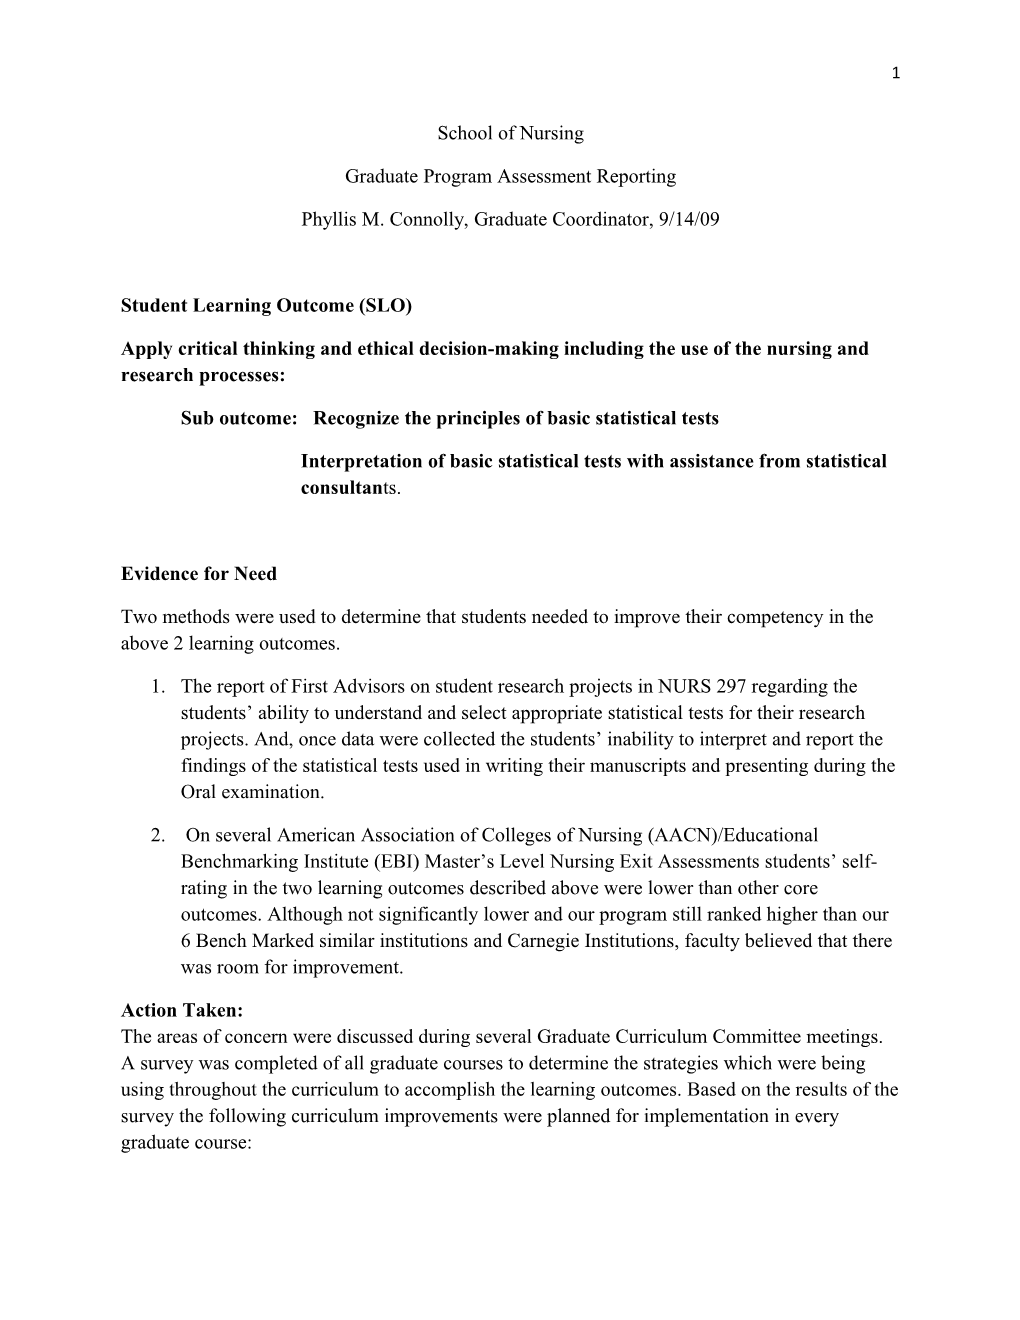 Graduate Program Assessment Reporting